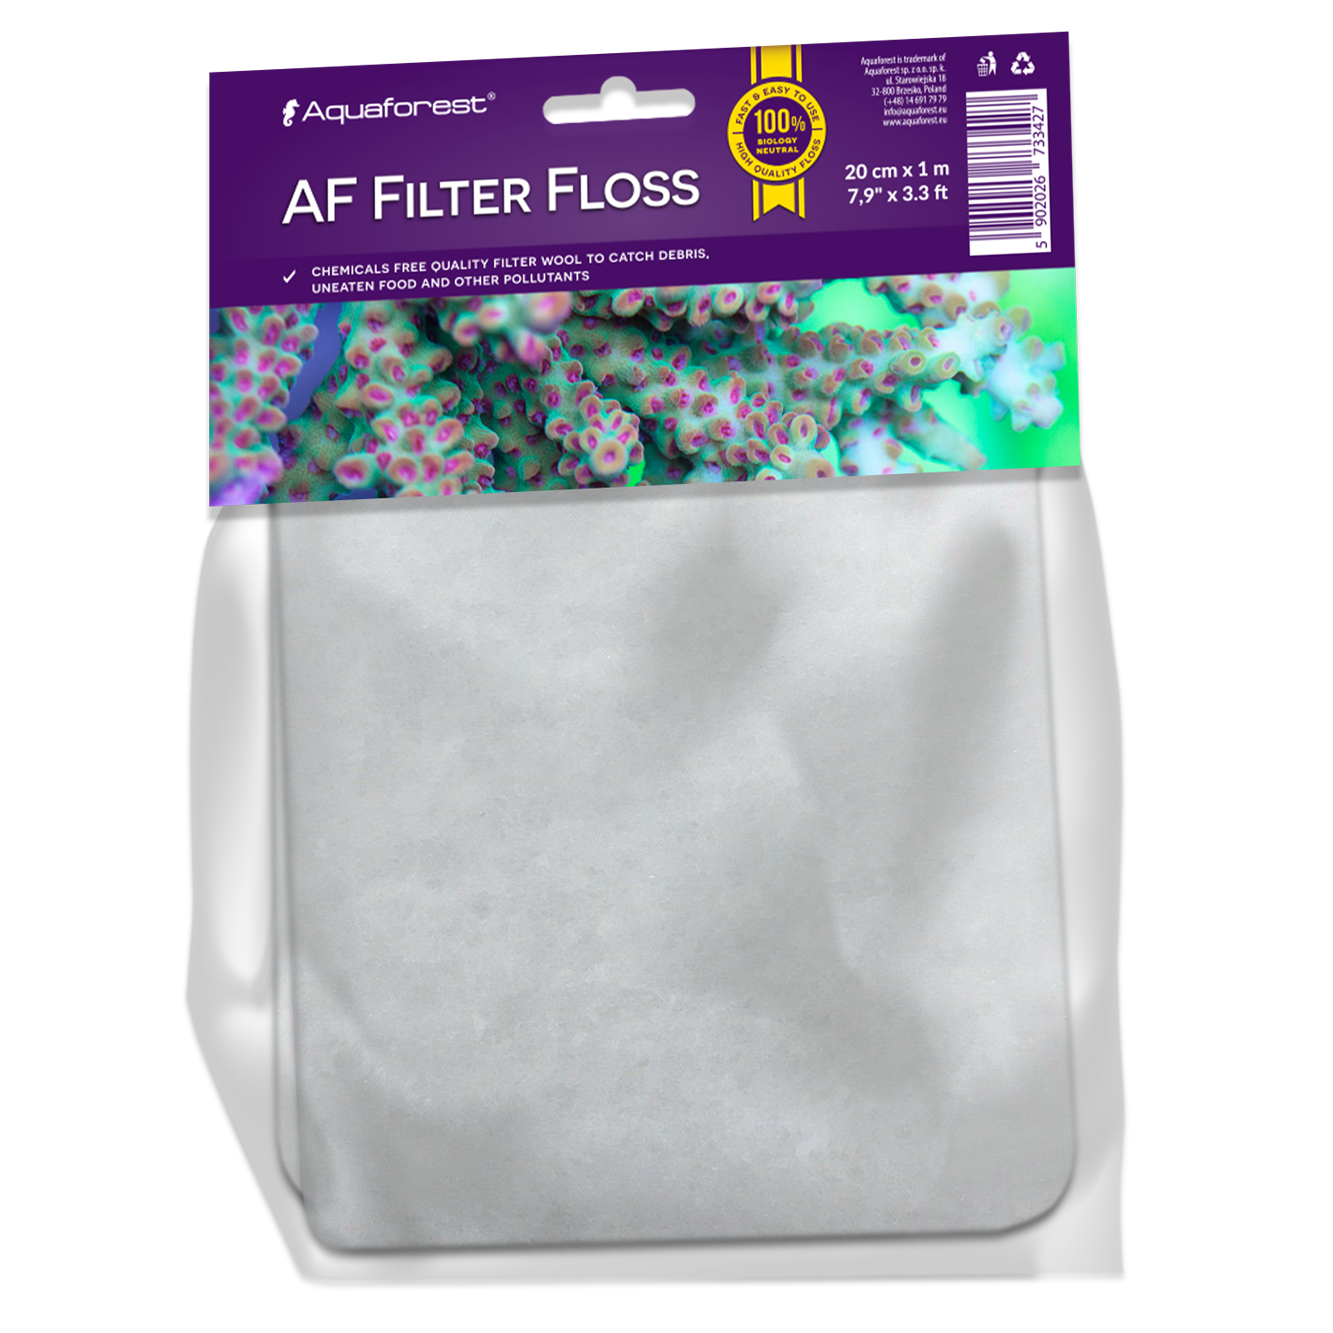 AF Filter Floss